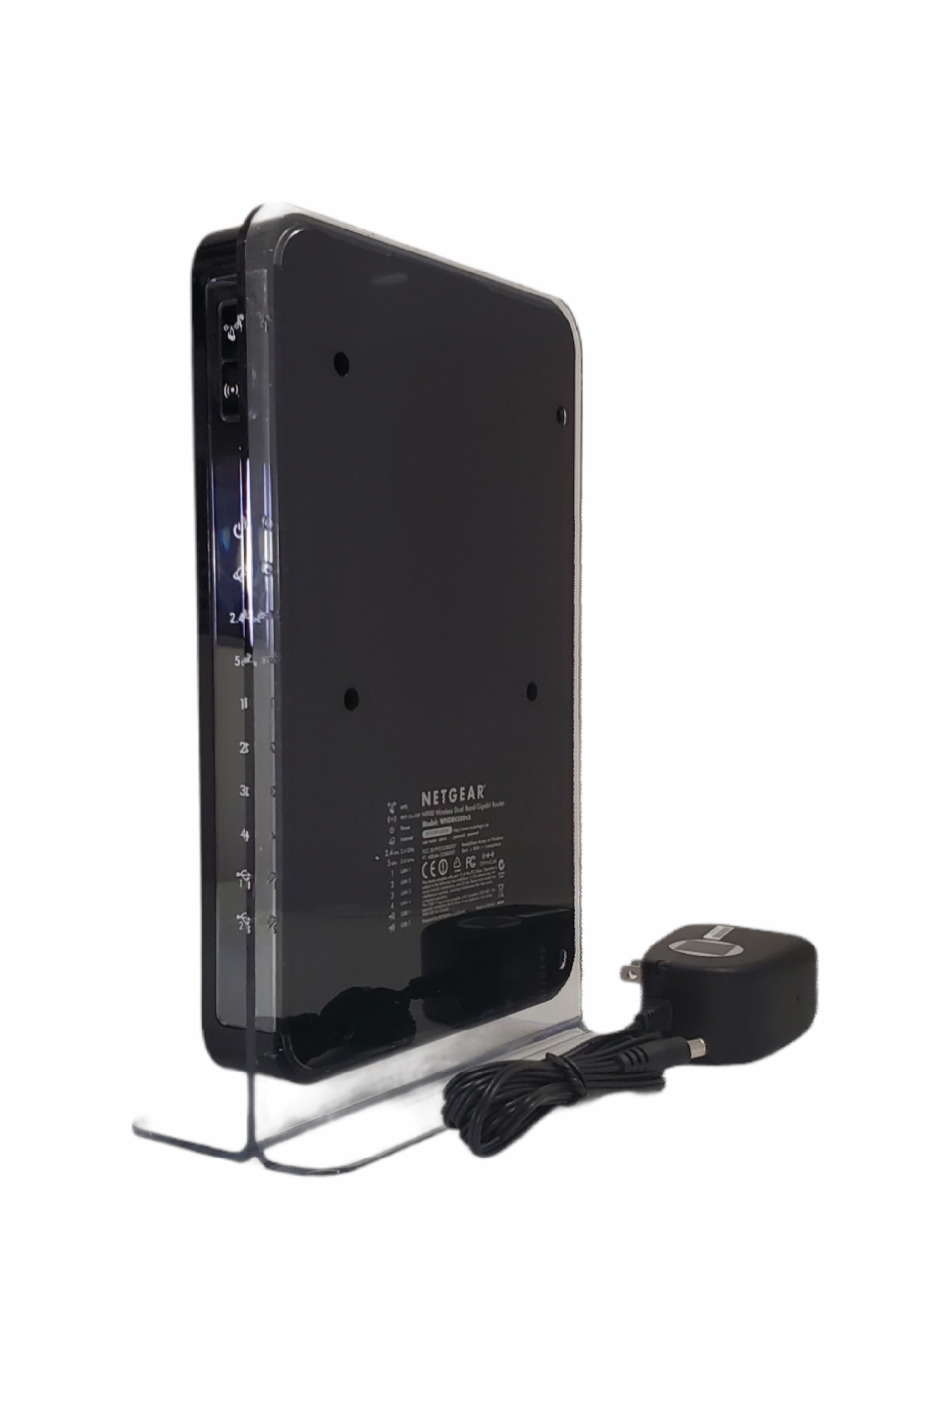 Netgear WNDR4500 450 Mbps 4-Port Gigabit Wireless N Router (N900)